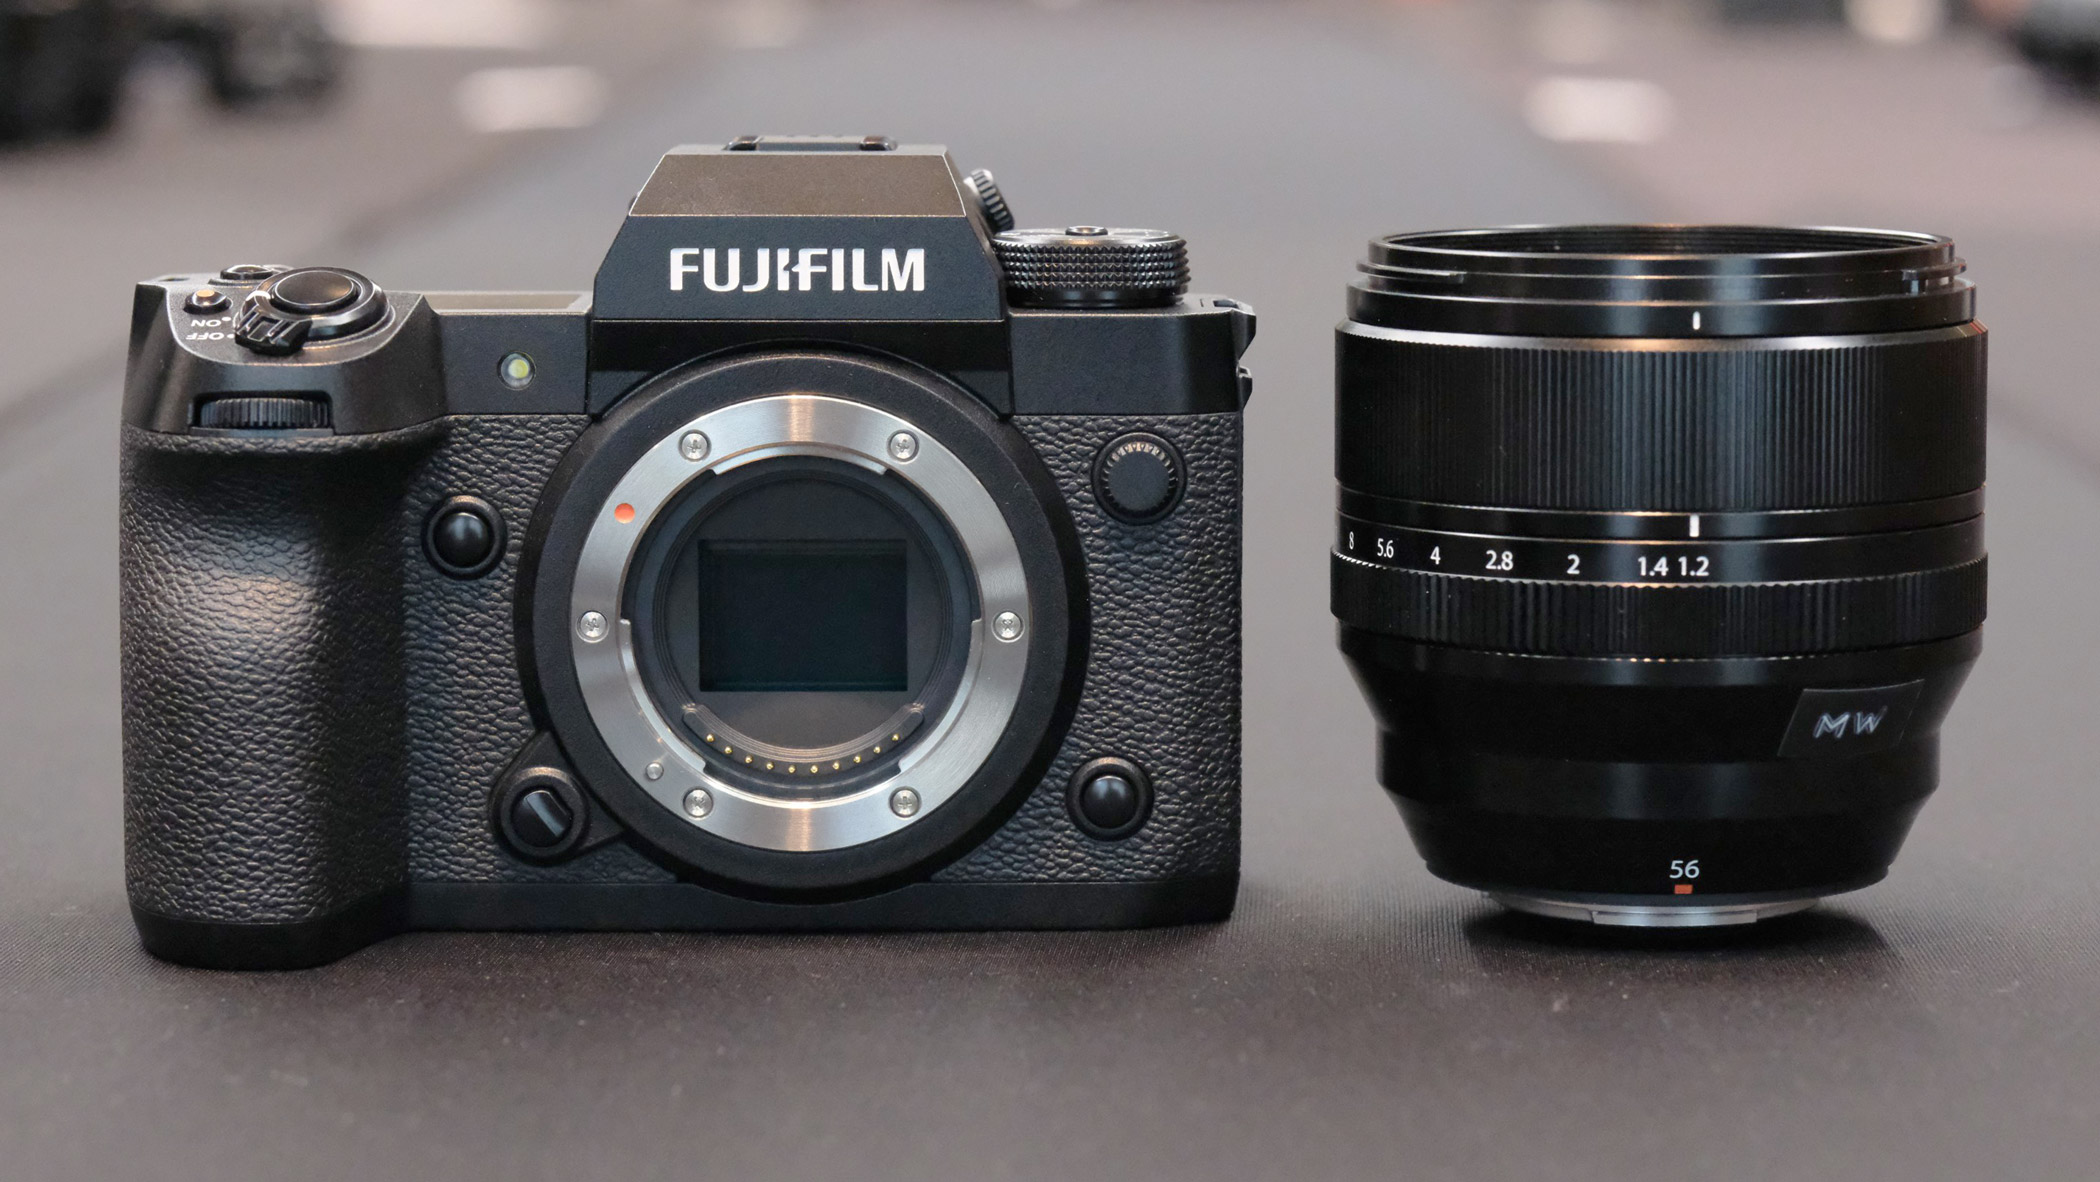 Fujifilm XF 56mm F1.2 R WR lens with Fujifilm X-H2